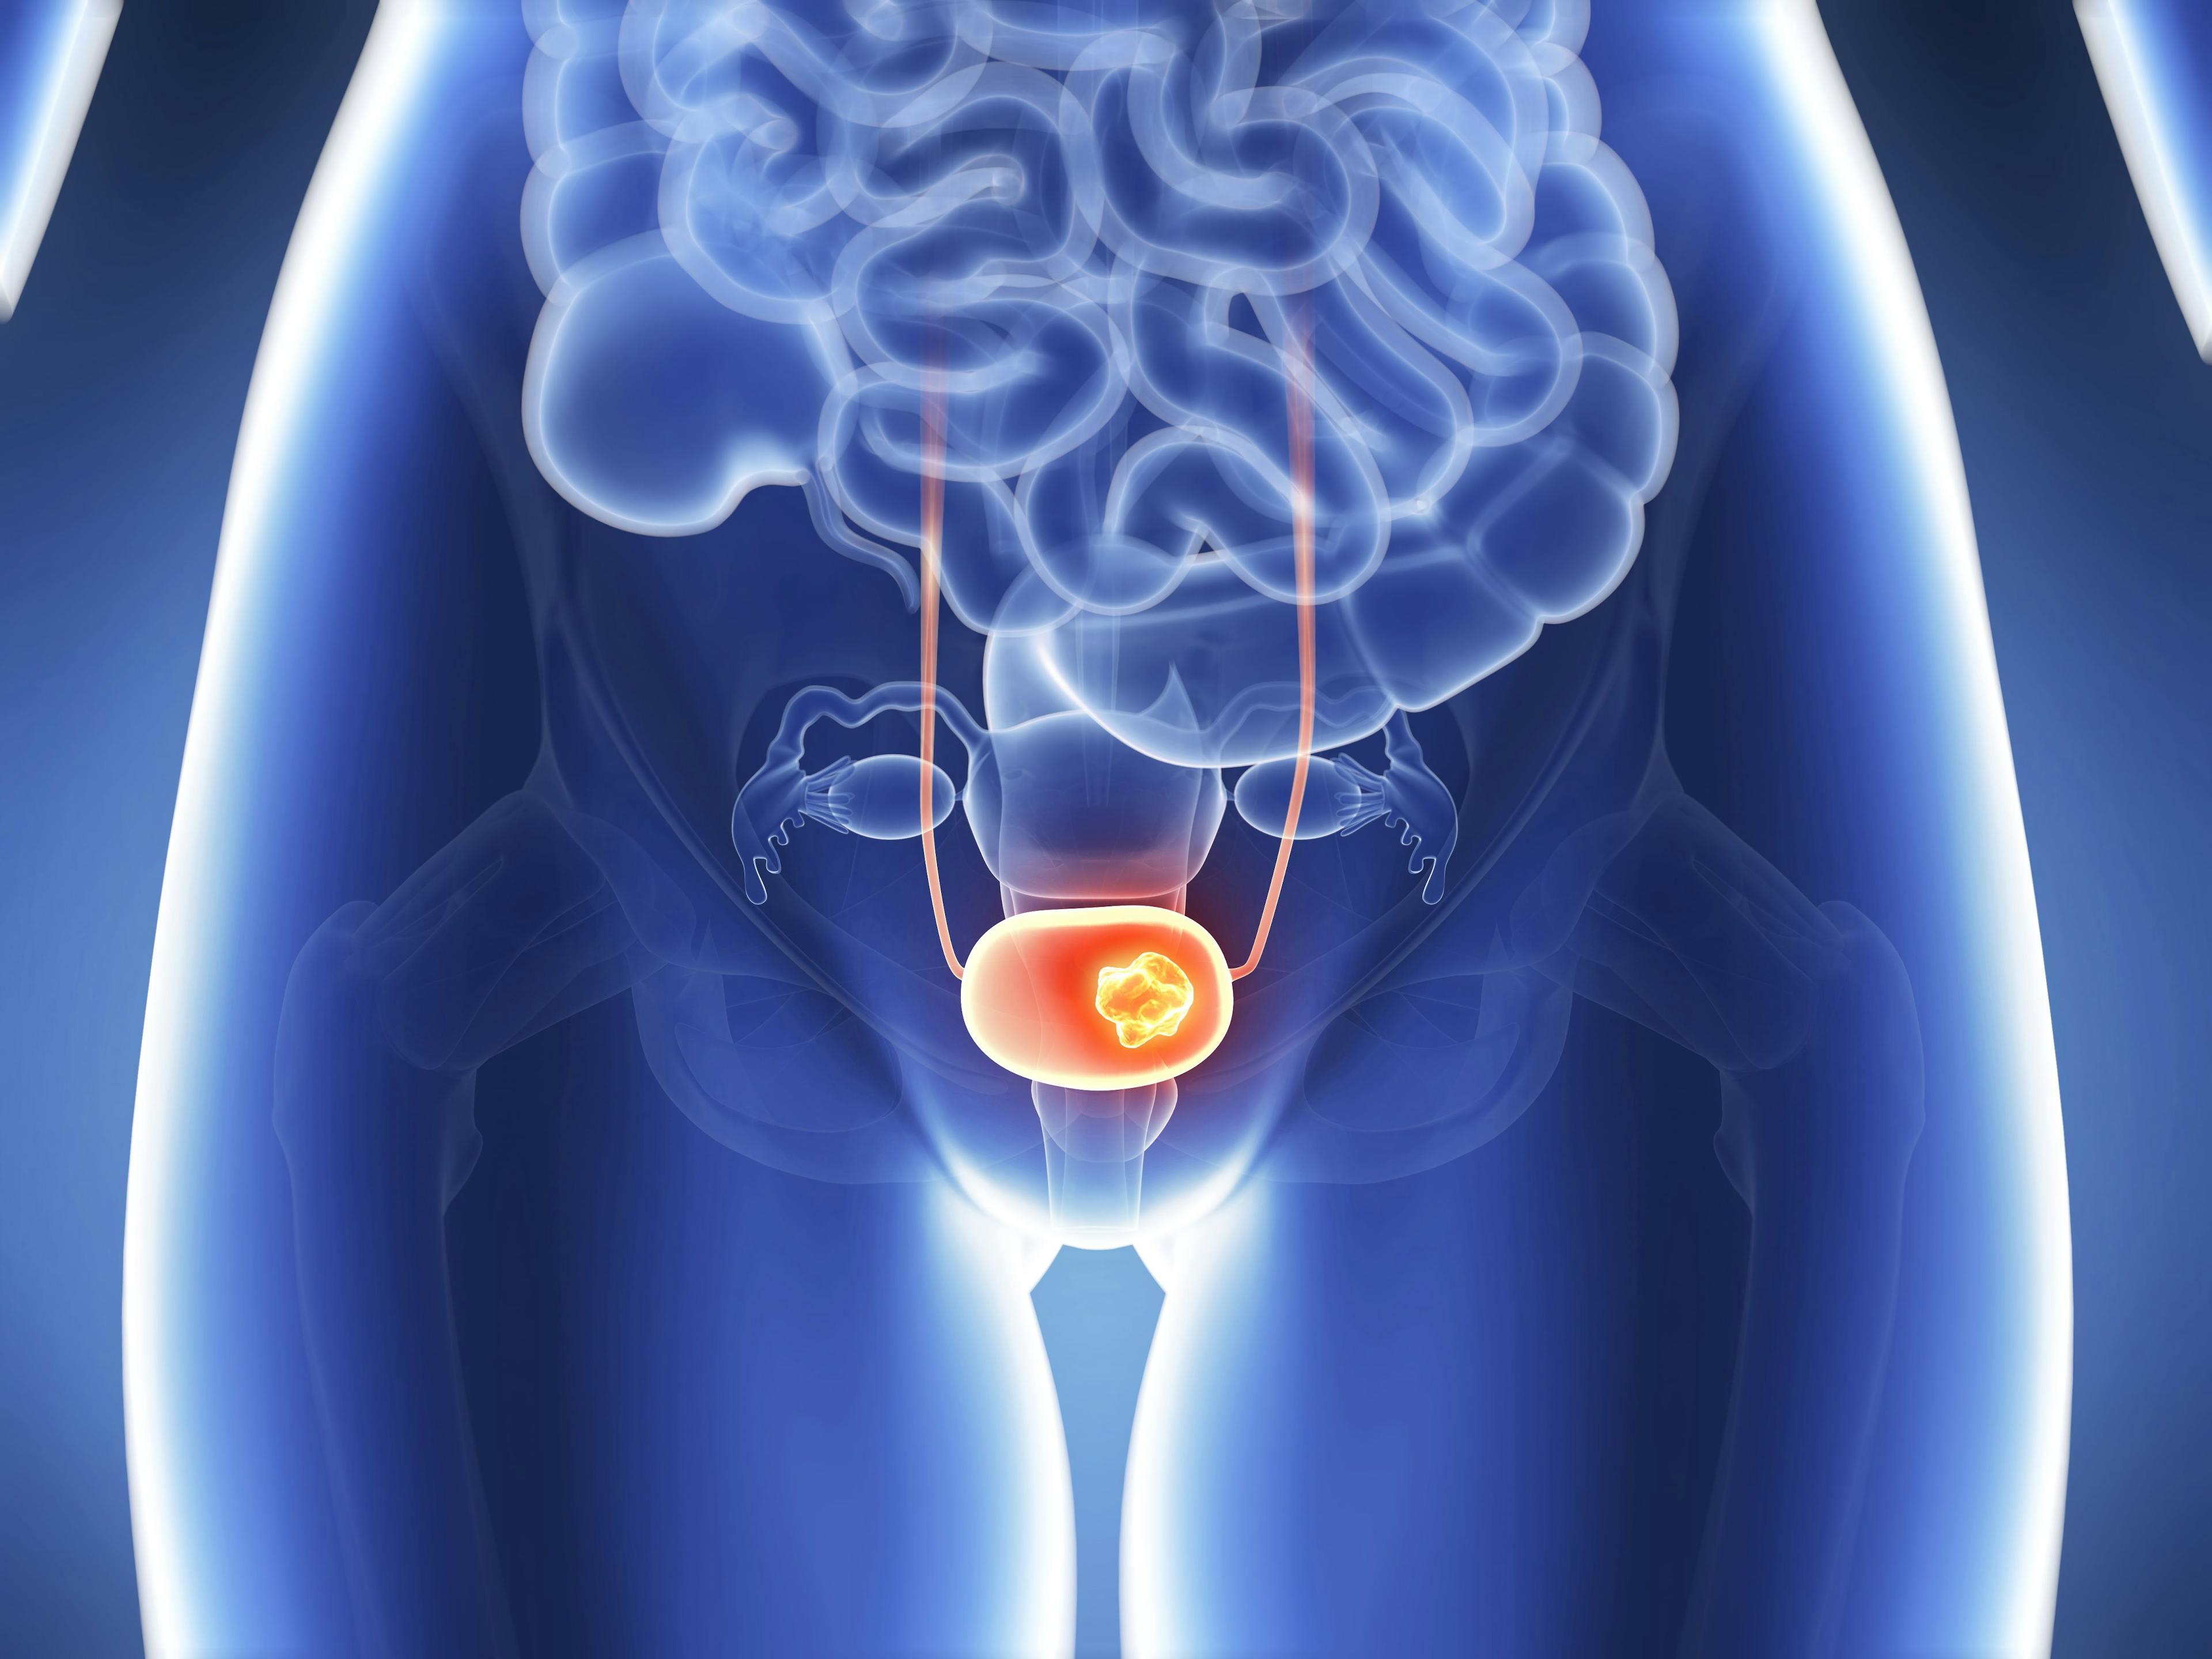 3D rendering of bladder cancer: ©SciePro - stock.adobe.com